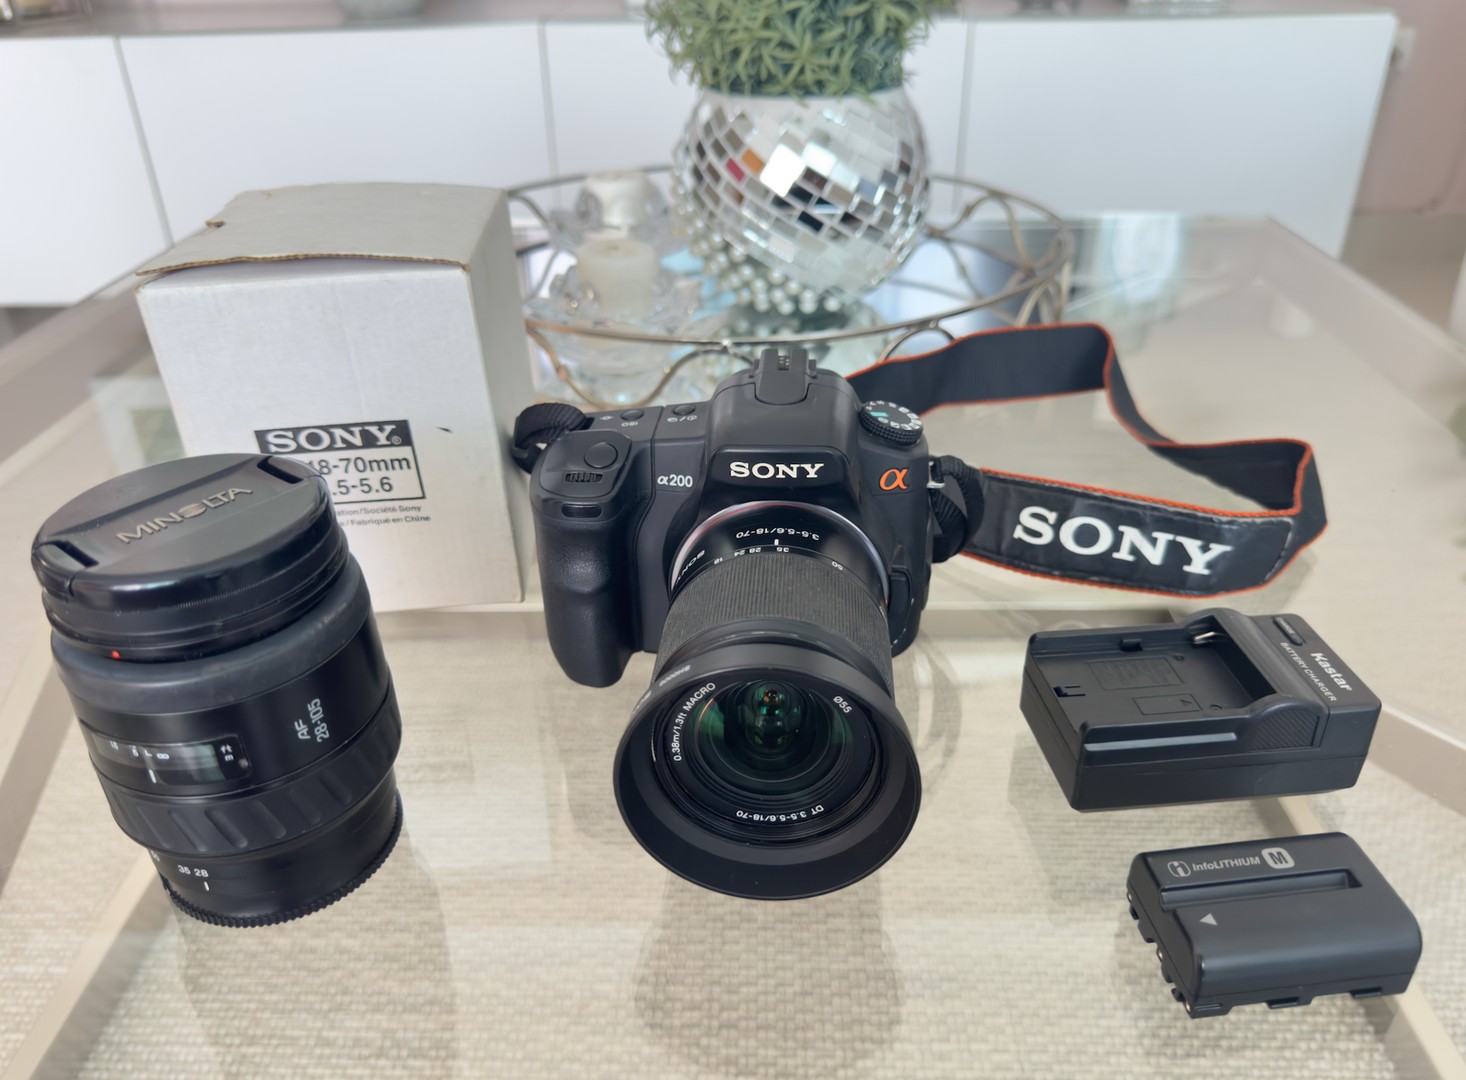 camaras y audio - Cámara Digital Sony Alpha A200 - Negra con dos lentes  de 18-70 mm y 66mm